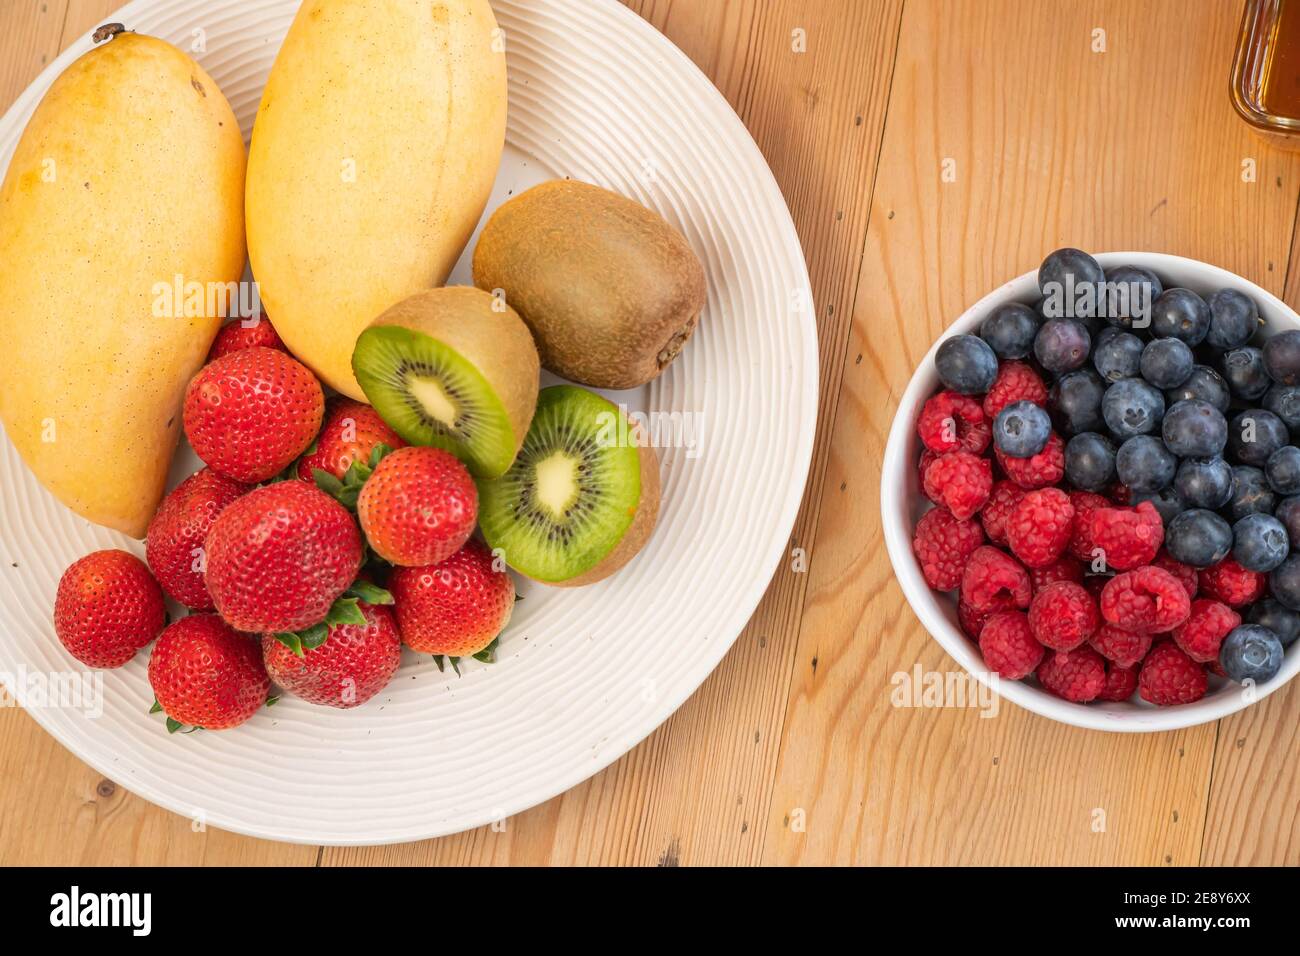 mixed fresh fruits (strawberry, raspberry, blueberry, kiwi, mango) on wood bowl Stock Photo